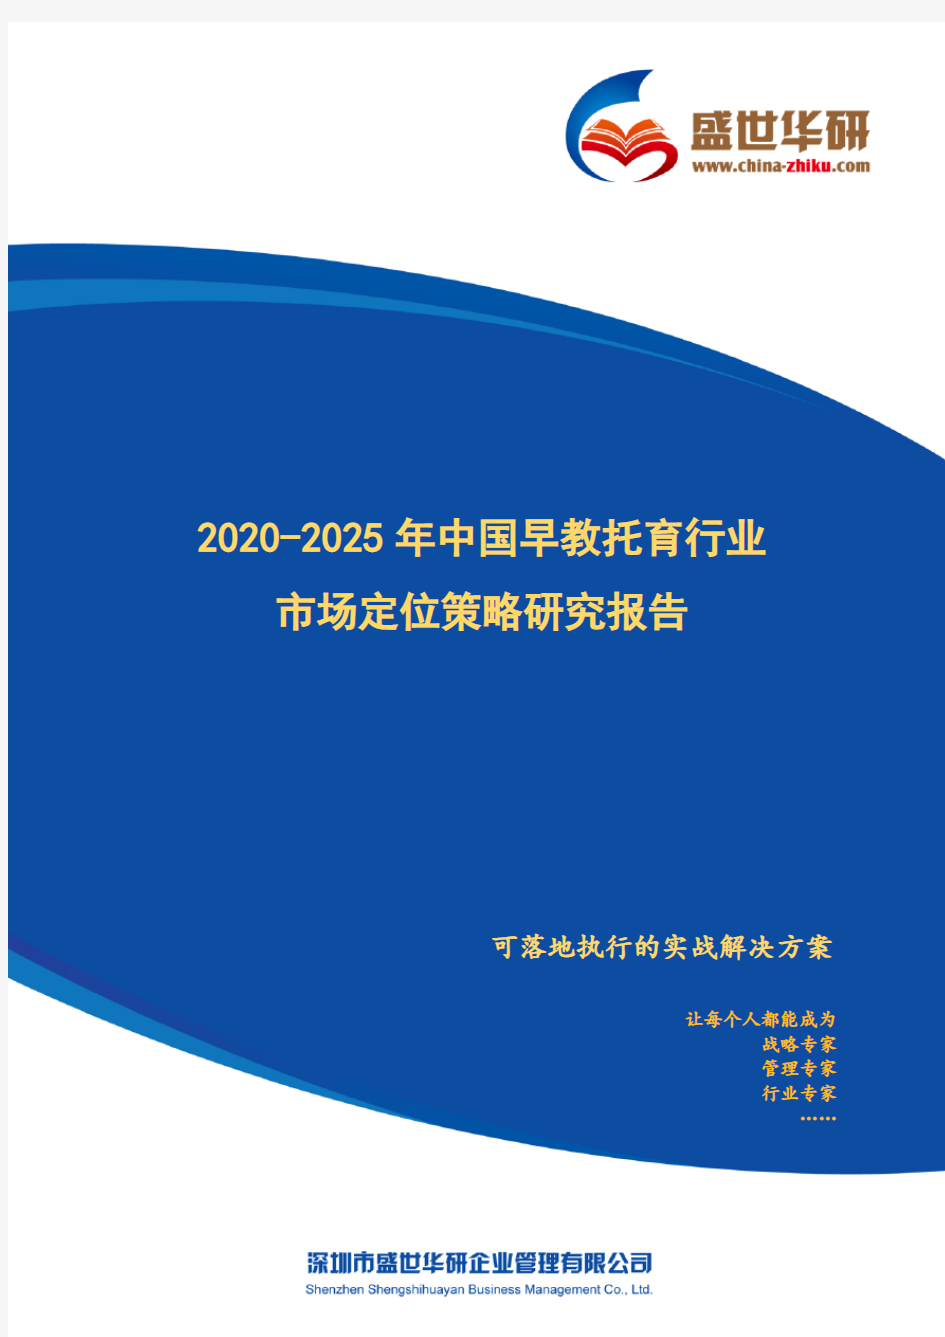 【完整版】2020-2025年中国早教托育行业市场定位策略研究报告